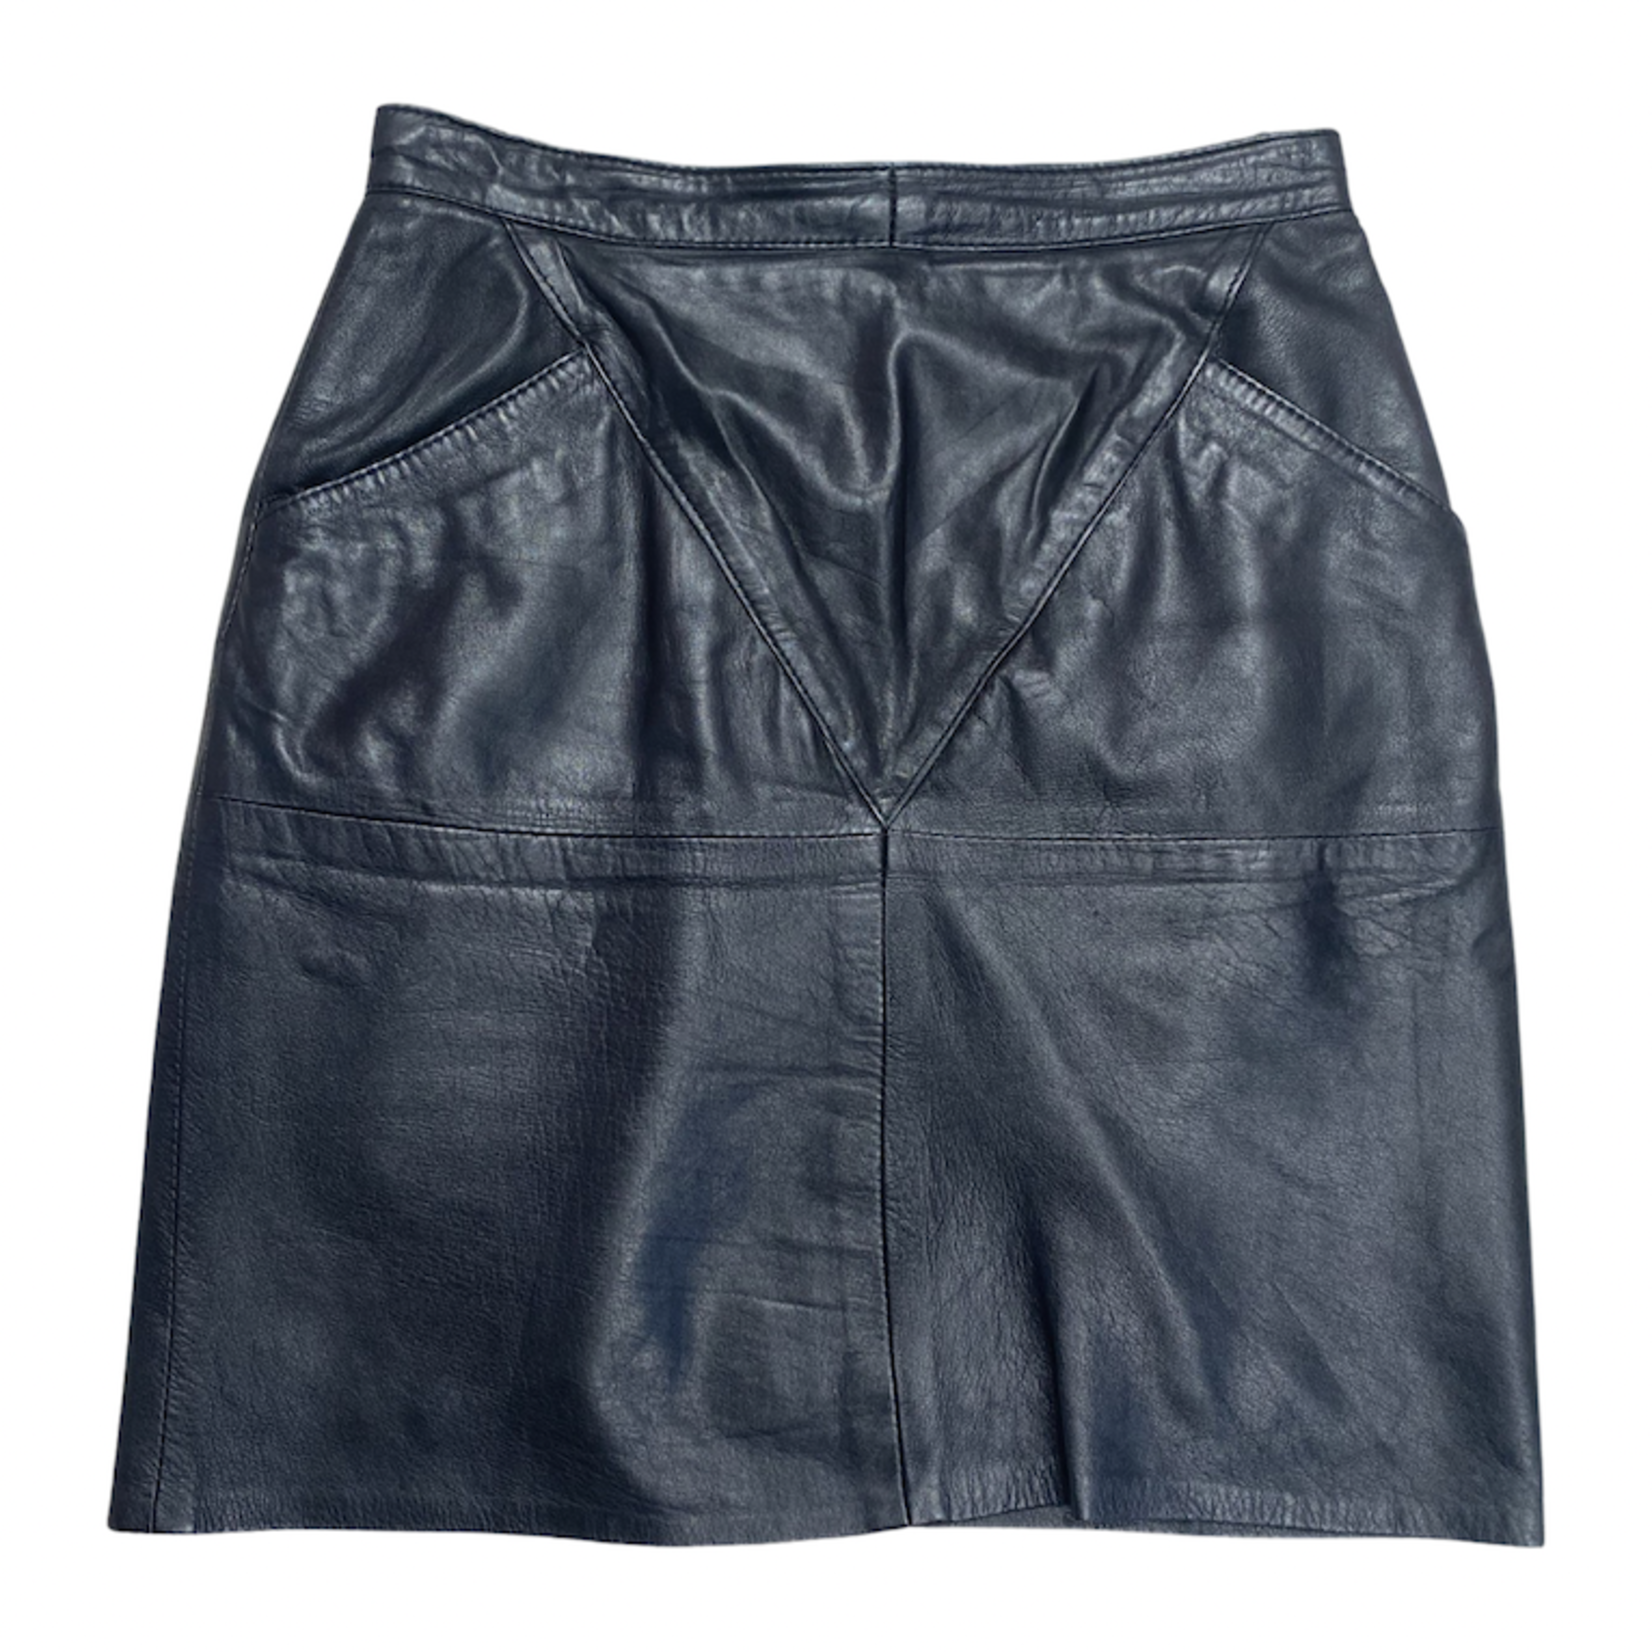 Vintage Vintage leather skirt short size M